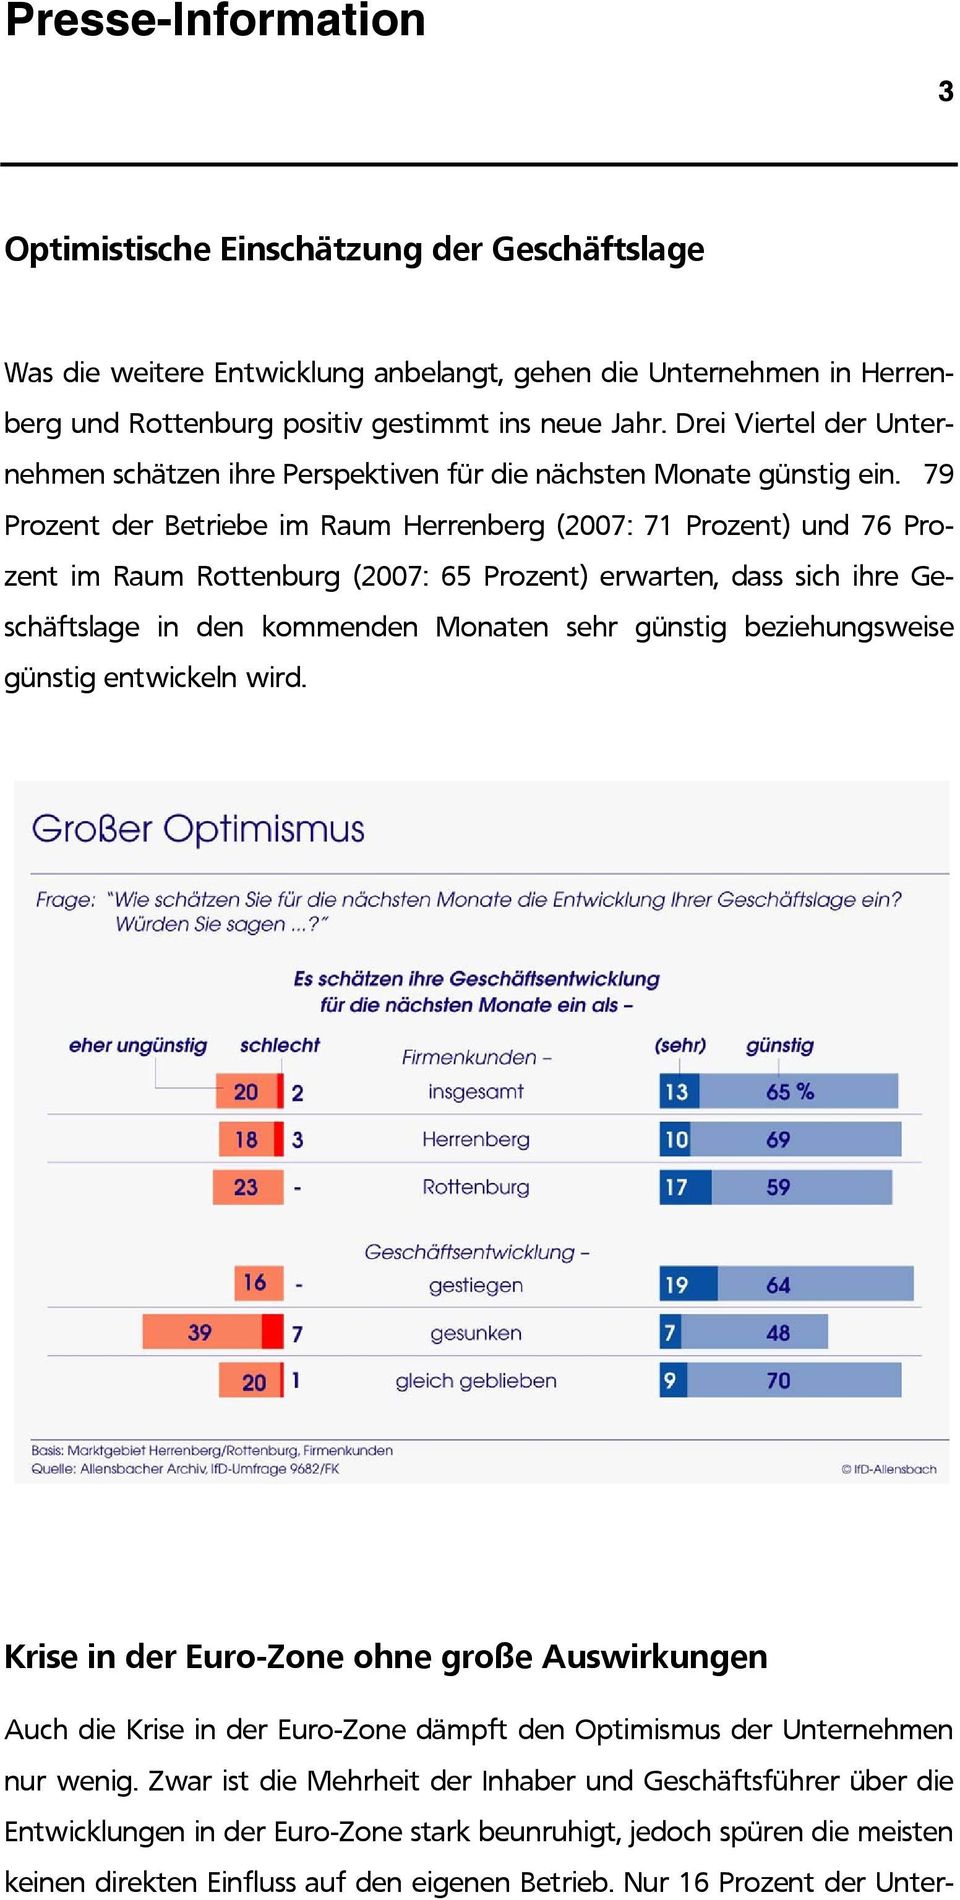 79 Prozent der Betriebe im Raum Herrenberg (2007: 71 Prozent) und 76 Prozent im Raum Rottenburg (2007: 65 Prozent) erwarten, dass sich ihre Geschäftslage in den kommenden Monaten sehr günstig